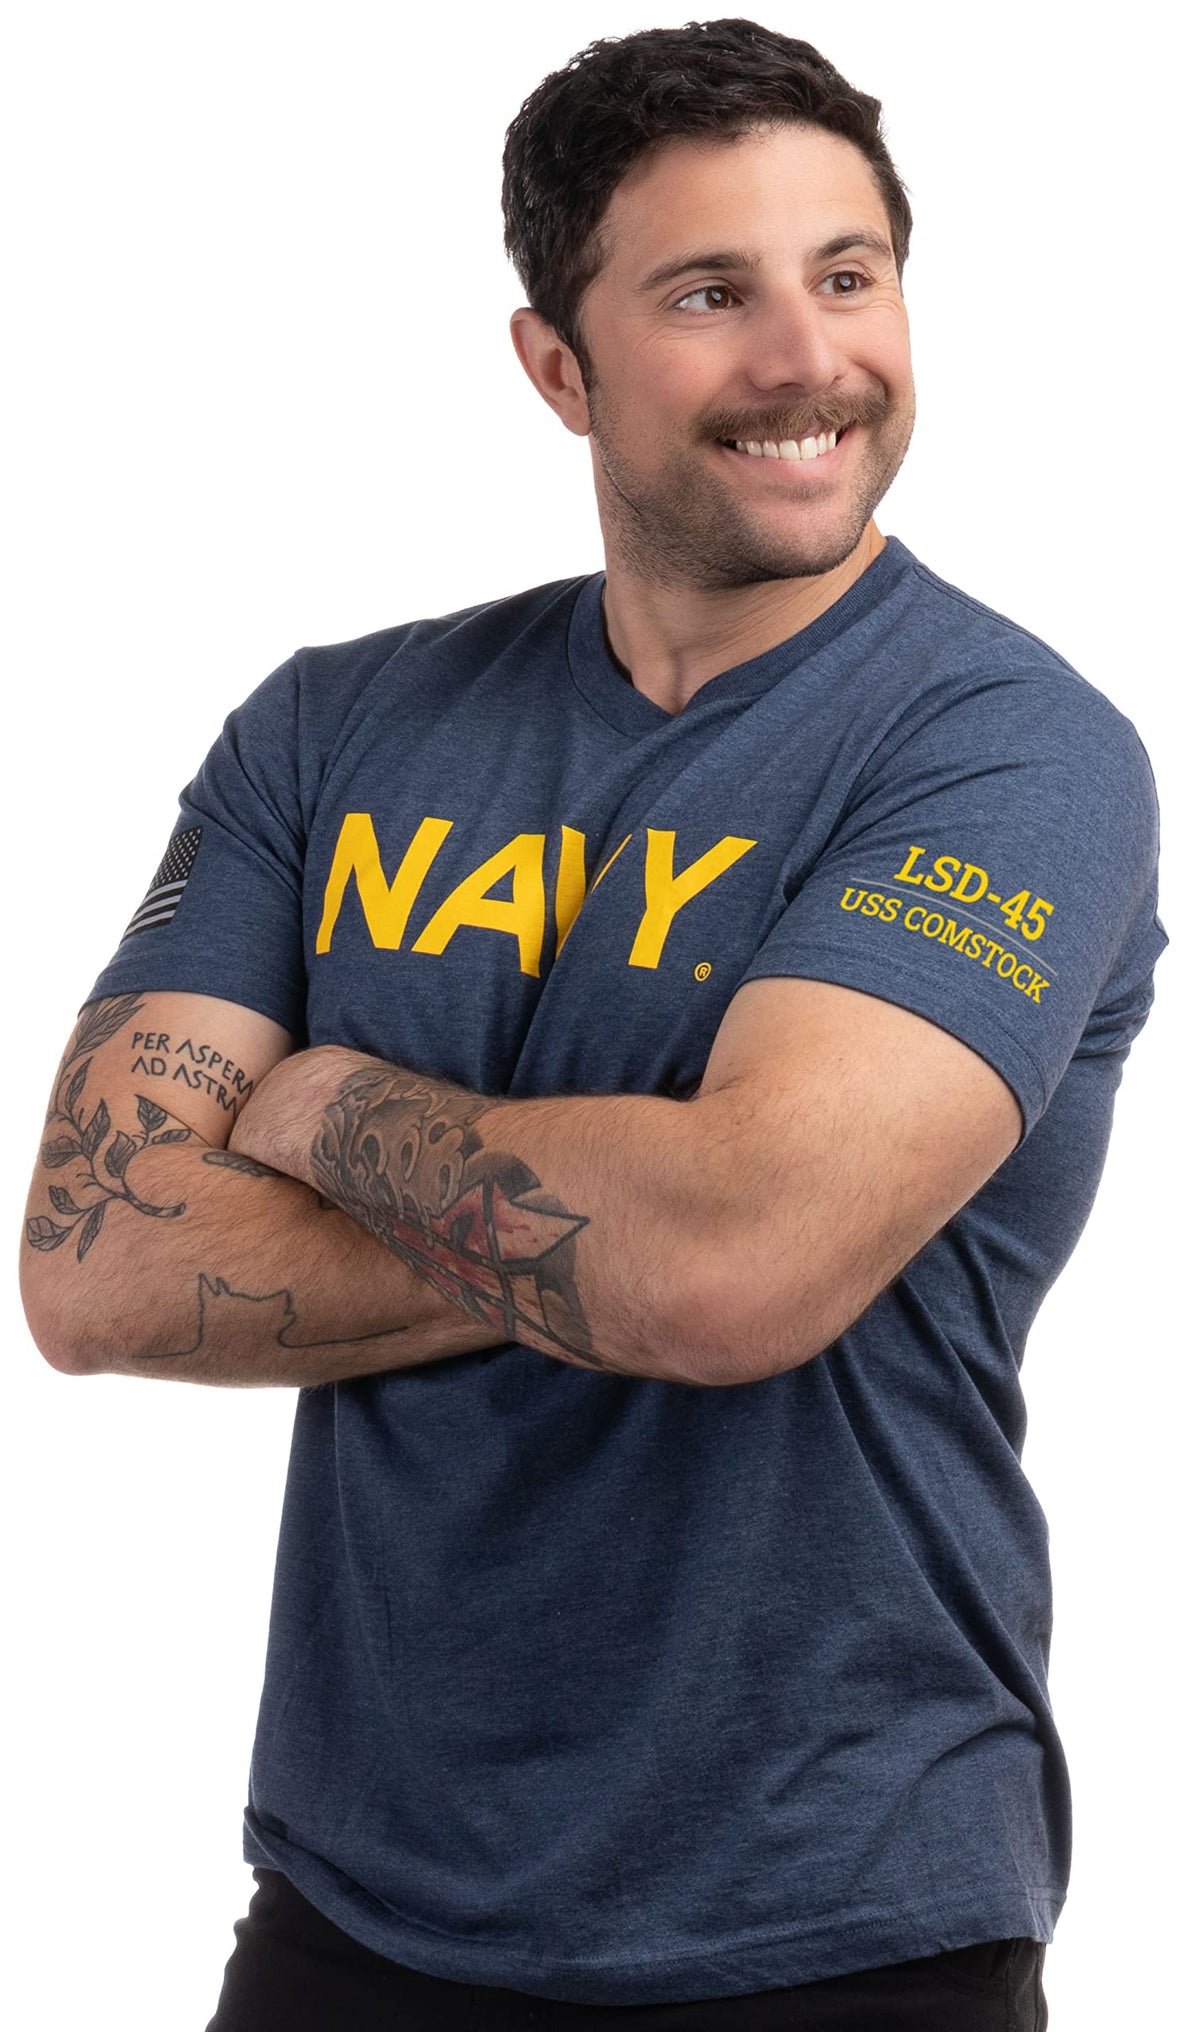 USS Comstock, LSD-45 | U.S. Navy Sailor Veteran USN United States Naval T-shirt for Men Women